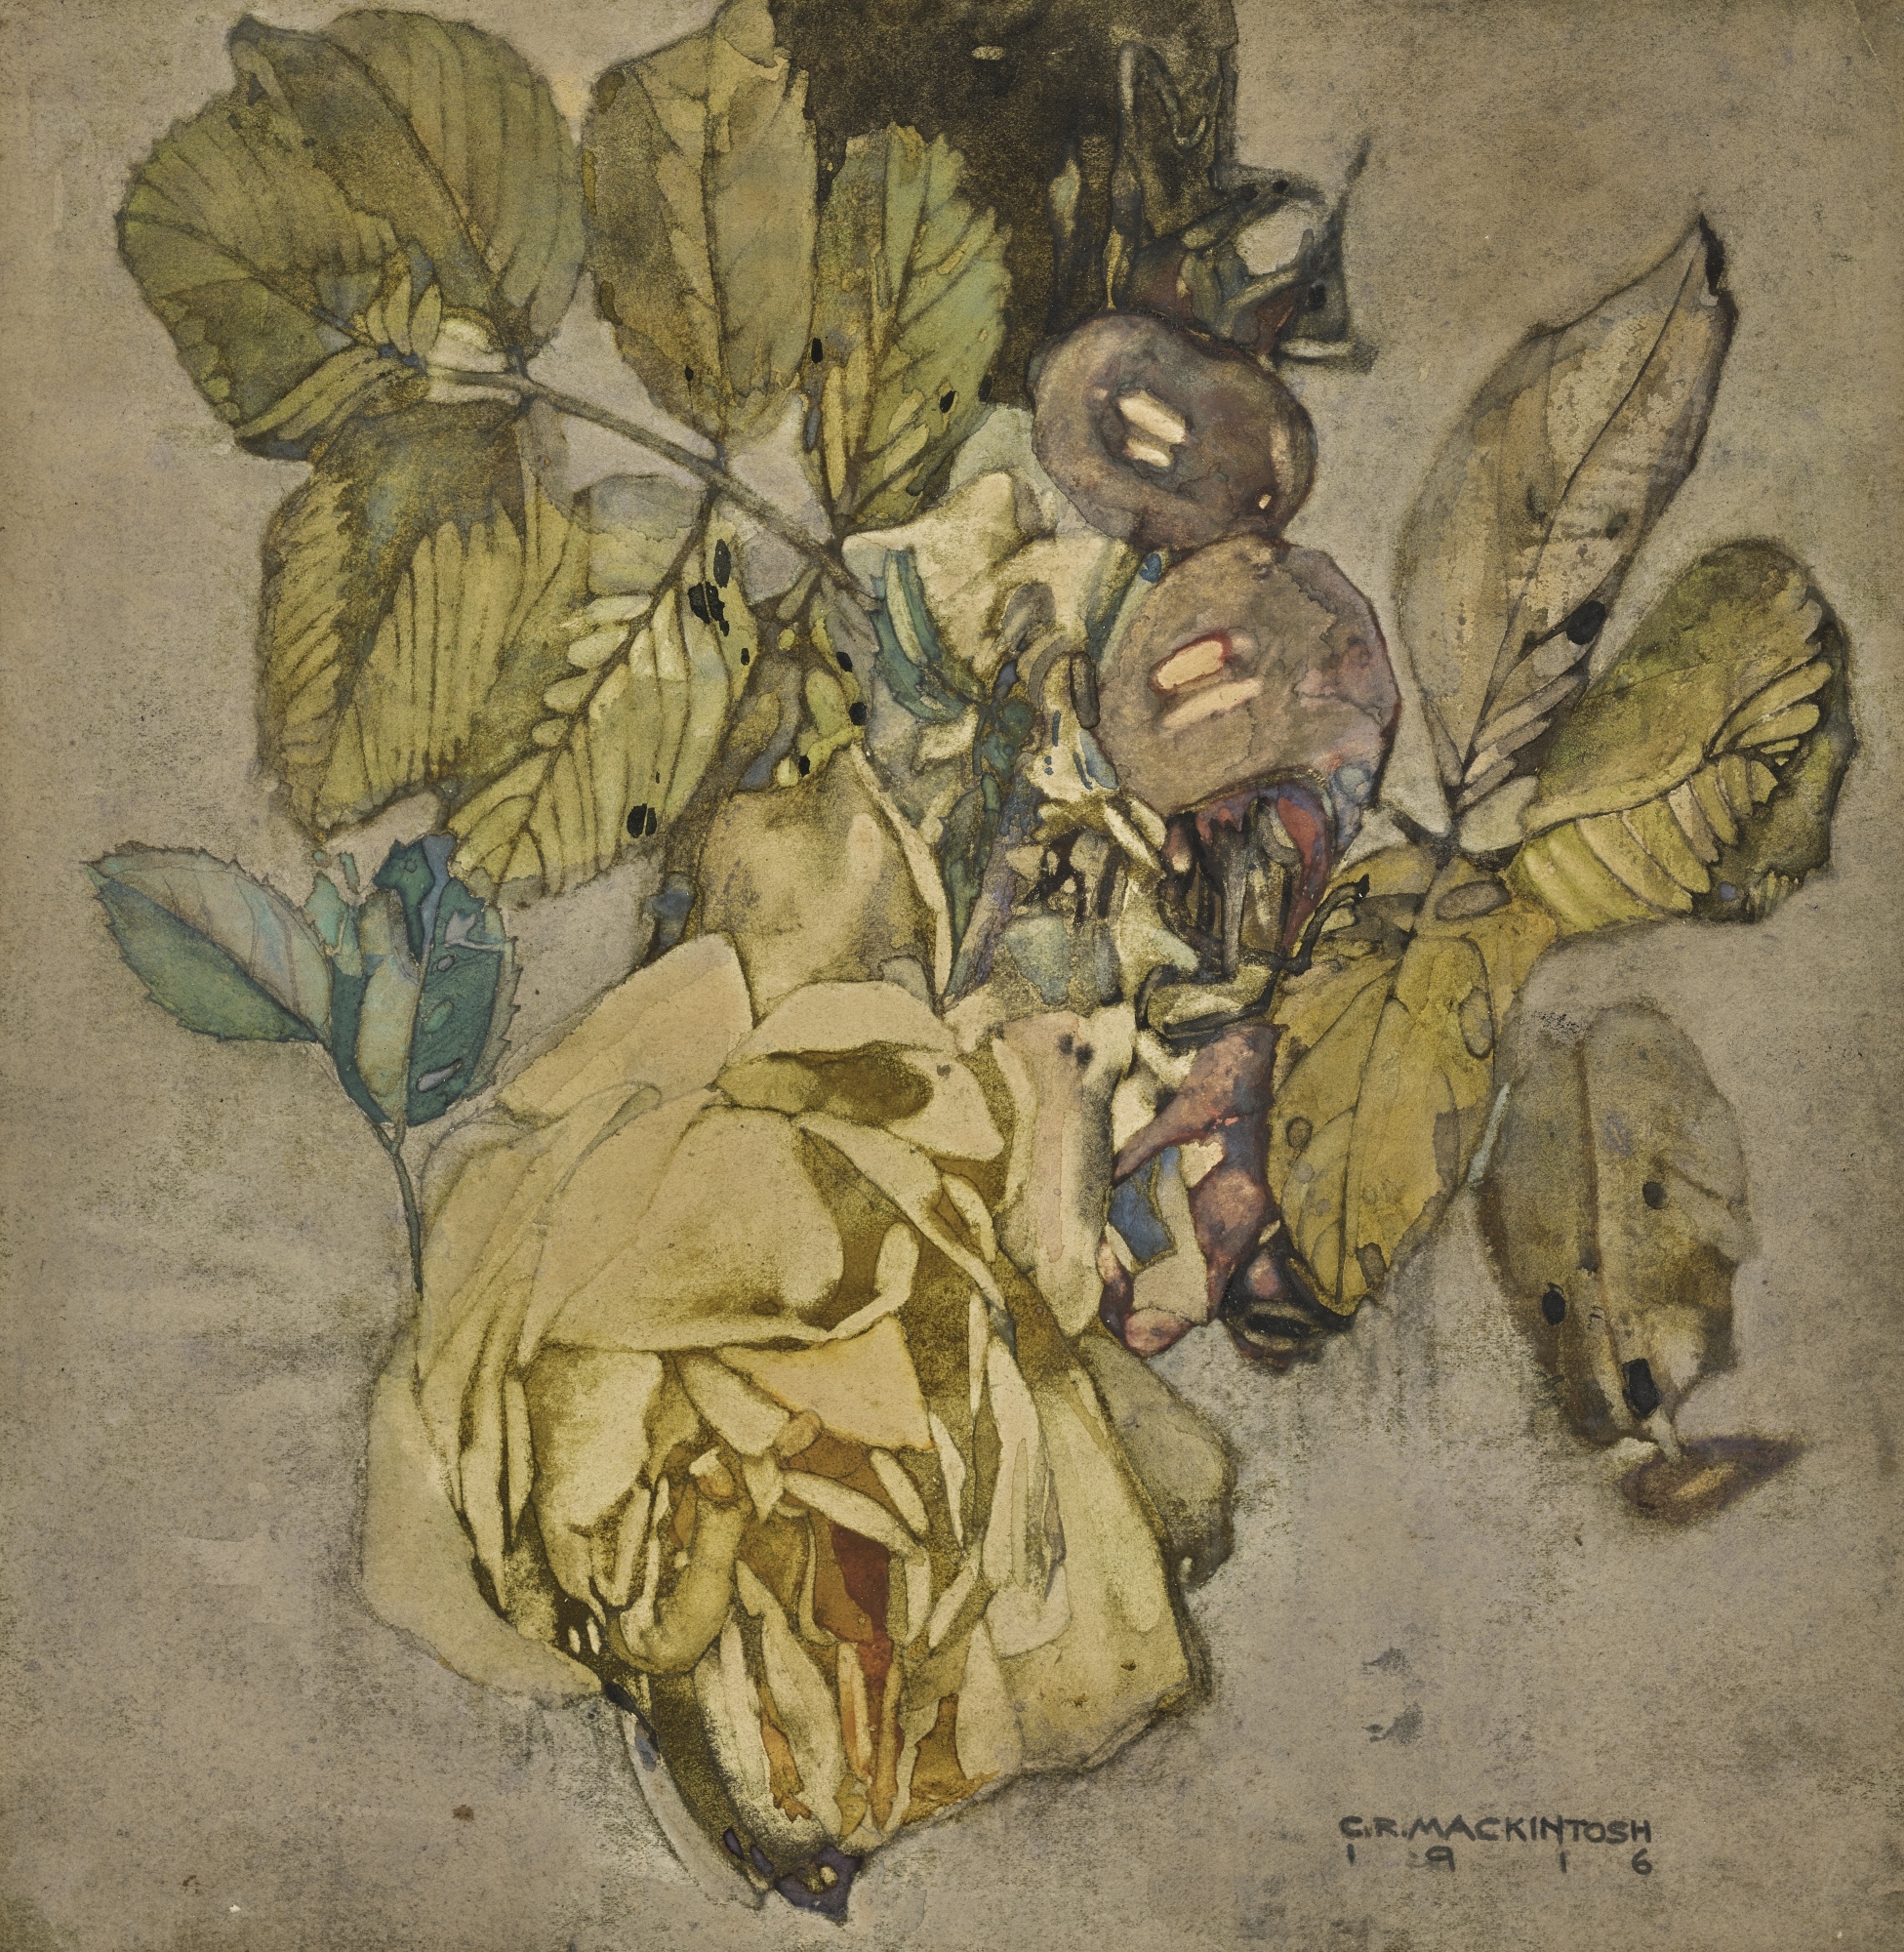 WINTER ROSE by Charles Rennie Mackintosh, 1916